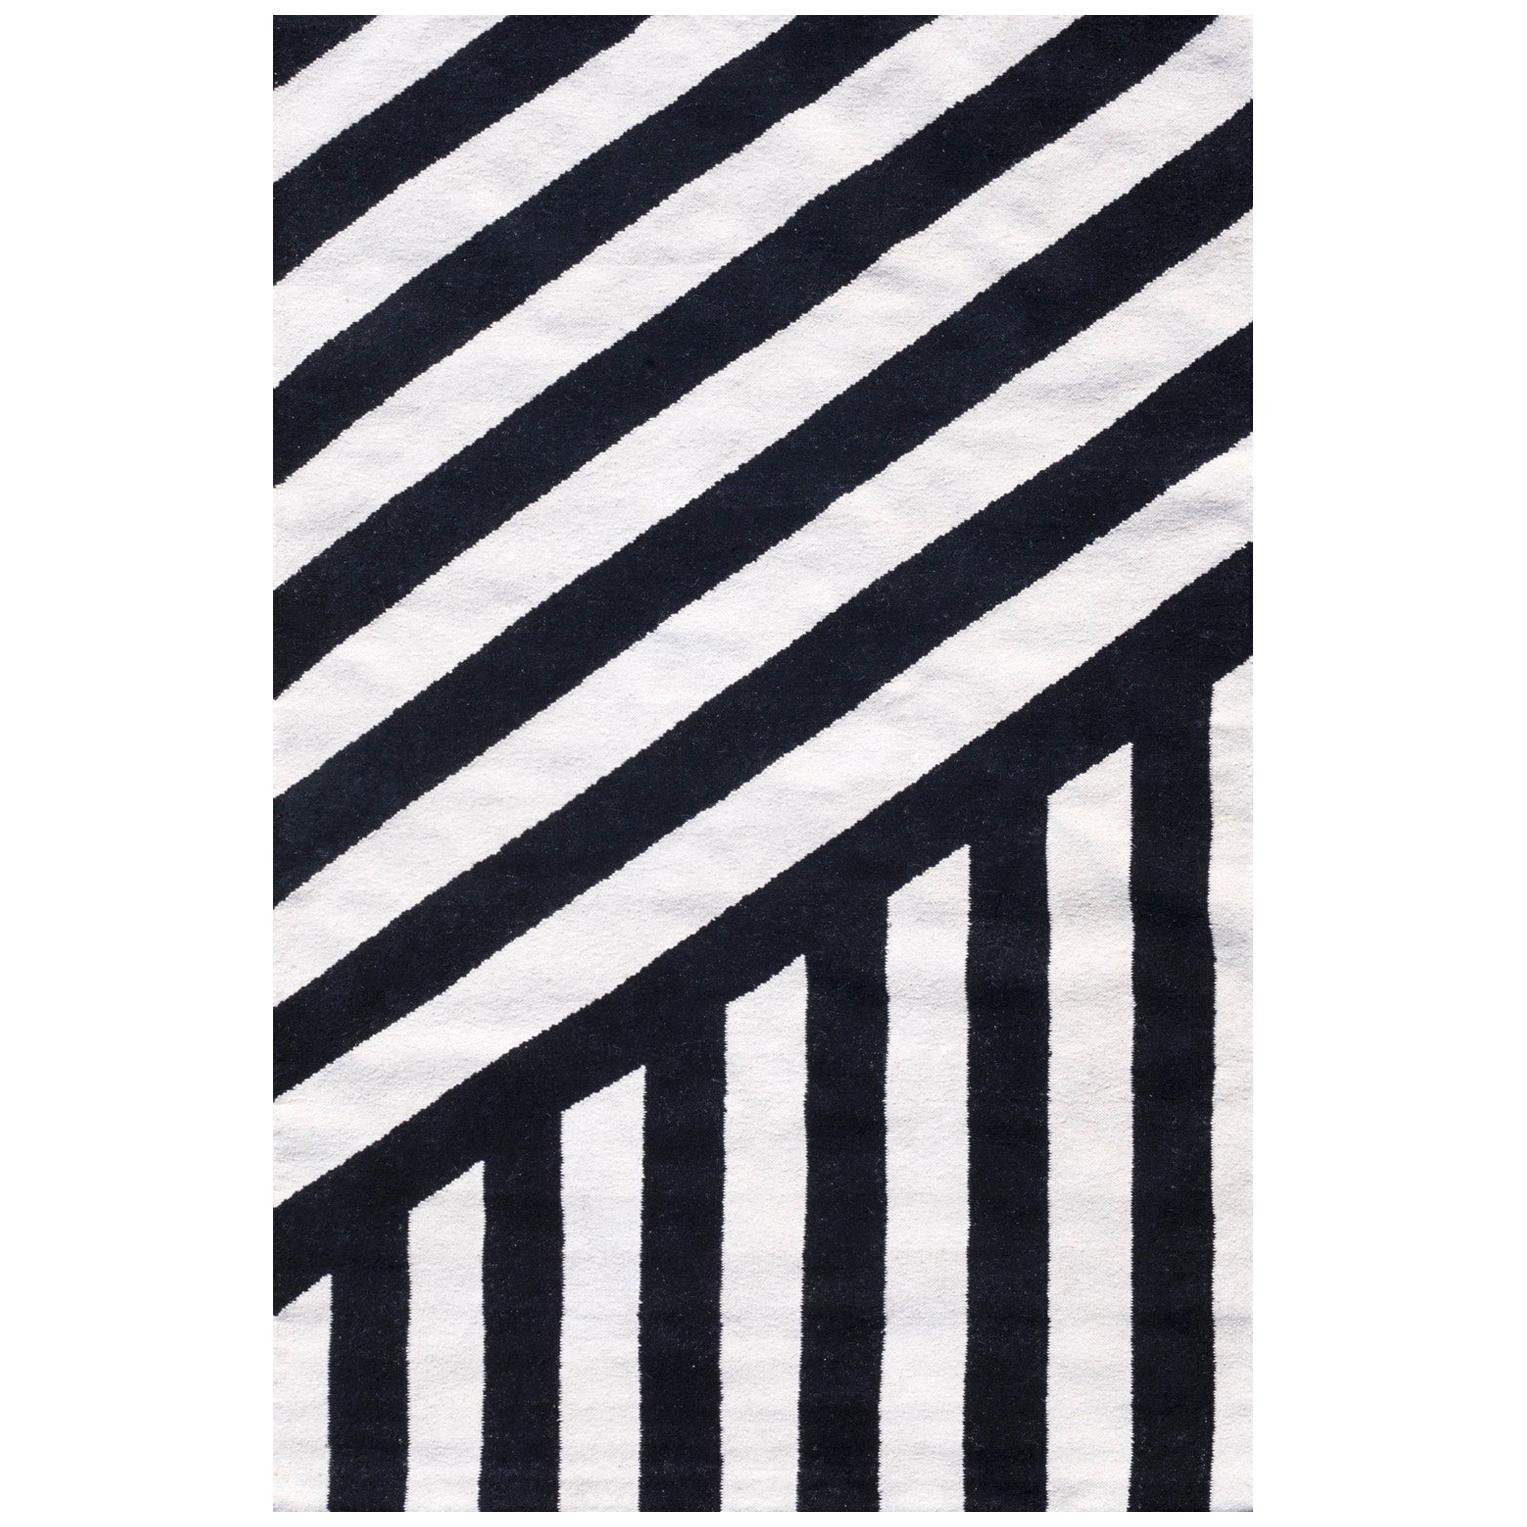 Moderner handgewebter Flachgewebe-Kelim-Teppich aus Wolle mit schwarzem und weißem Zebra